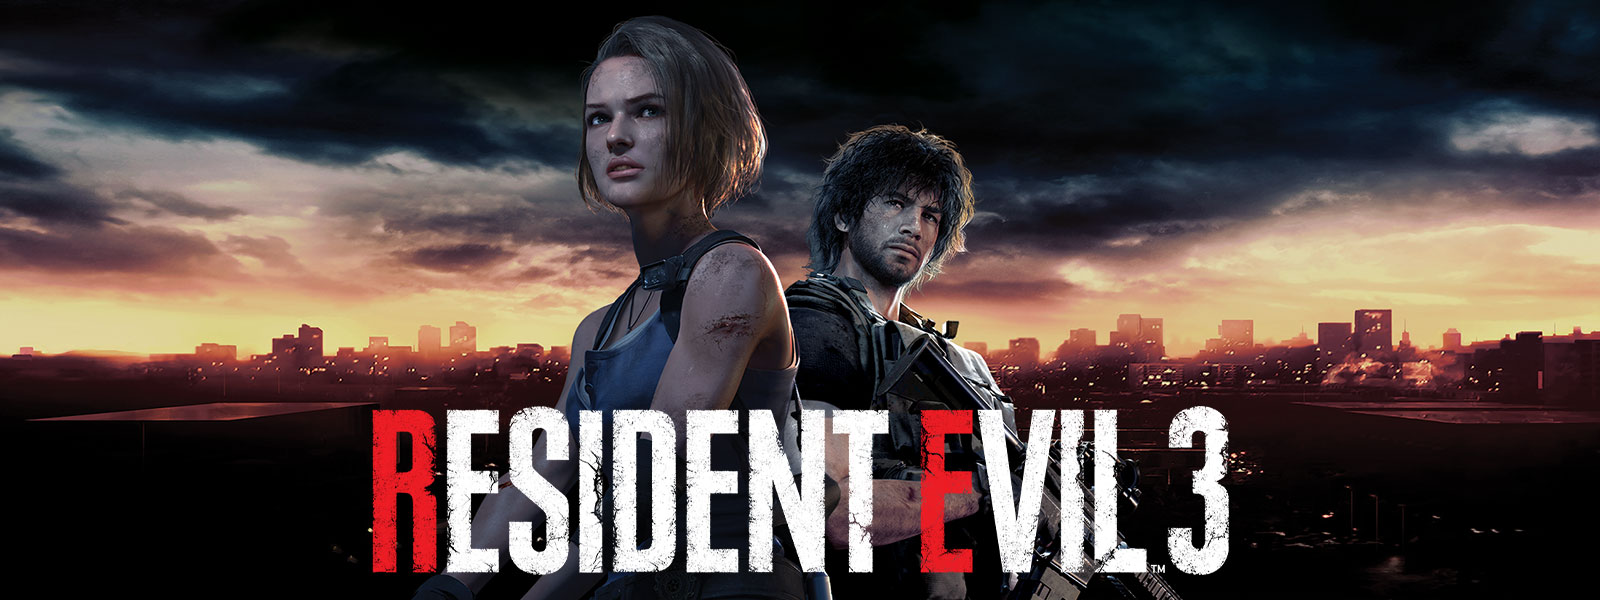 Resident Evil 3, Jill Valentine og Carlos Oliveira står med skyline av Raccoon City bak seg